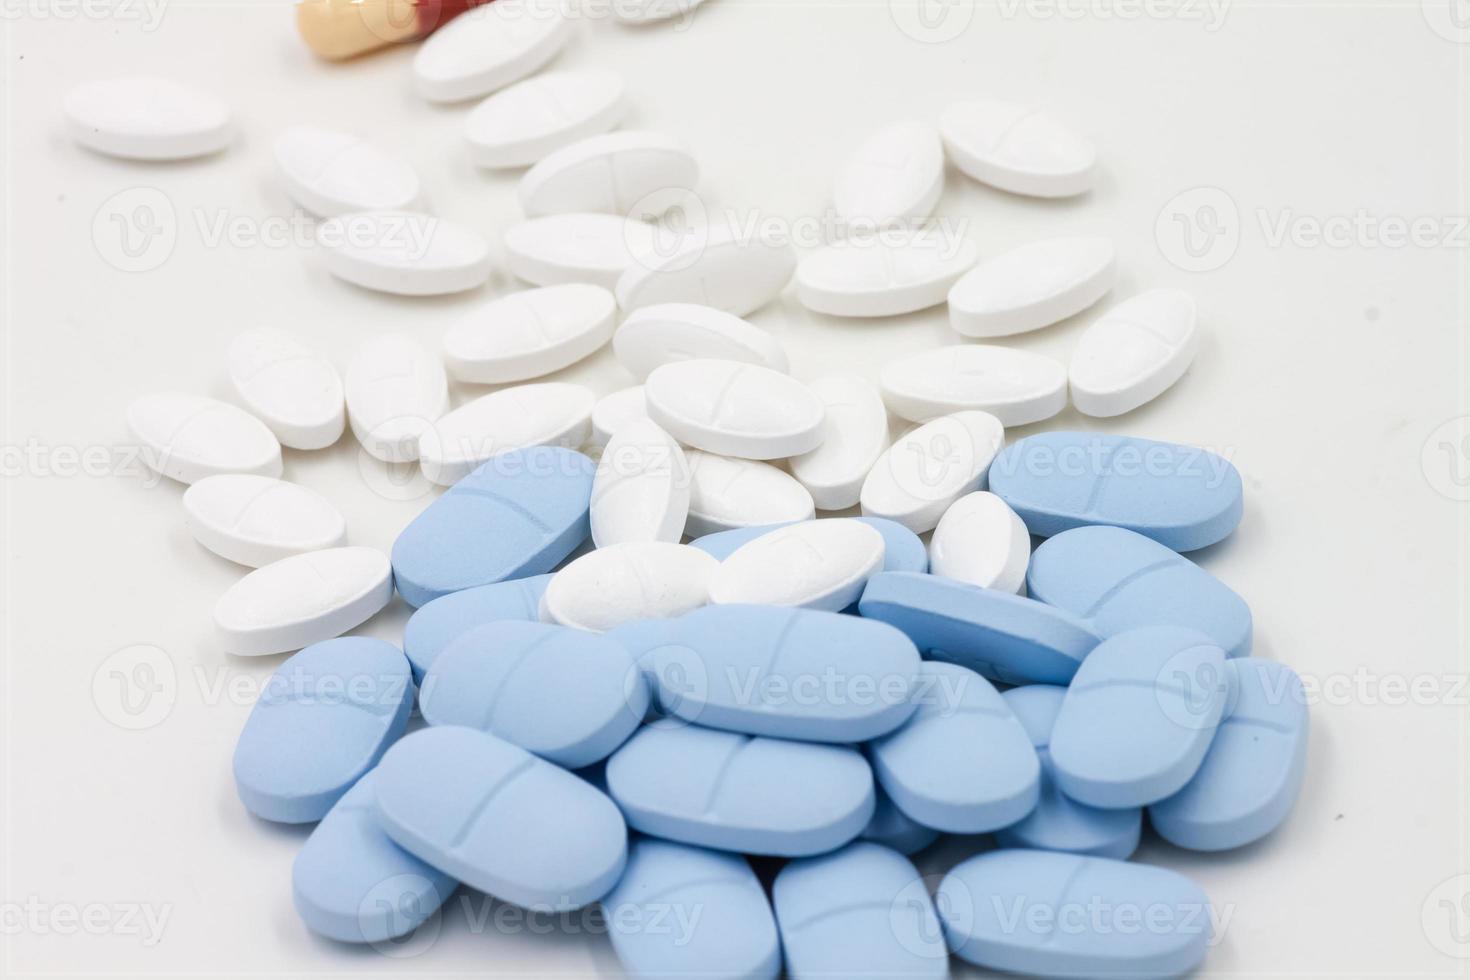 tabletas farmacia medicina medico foto